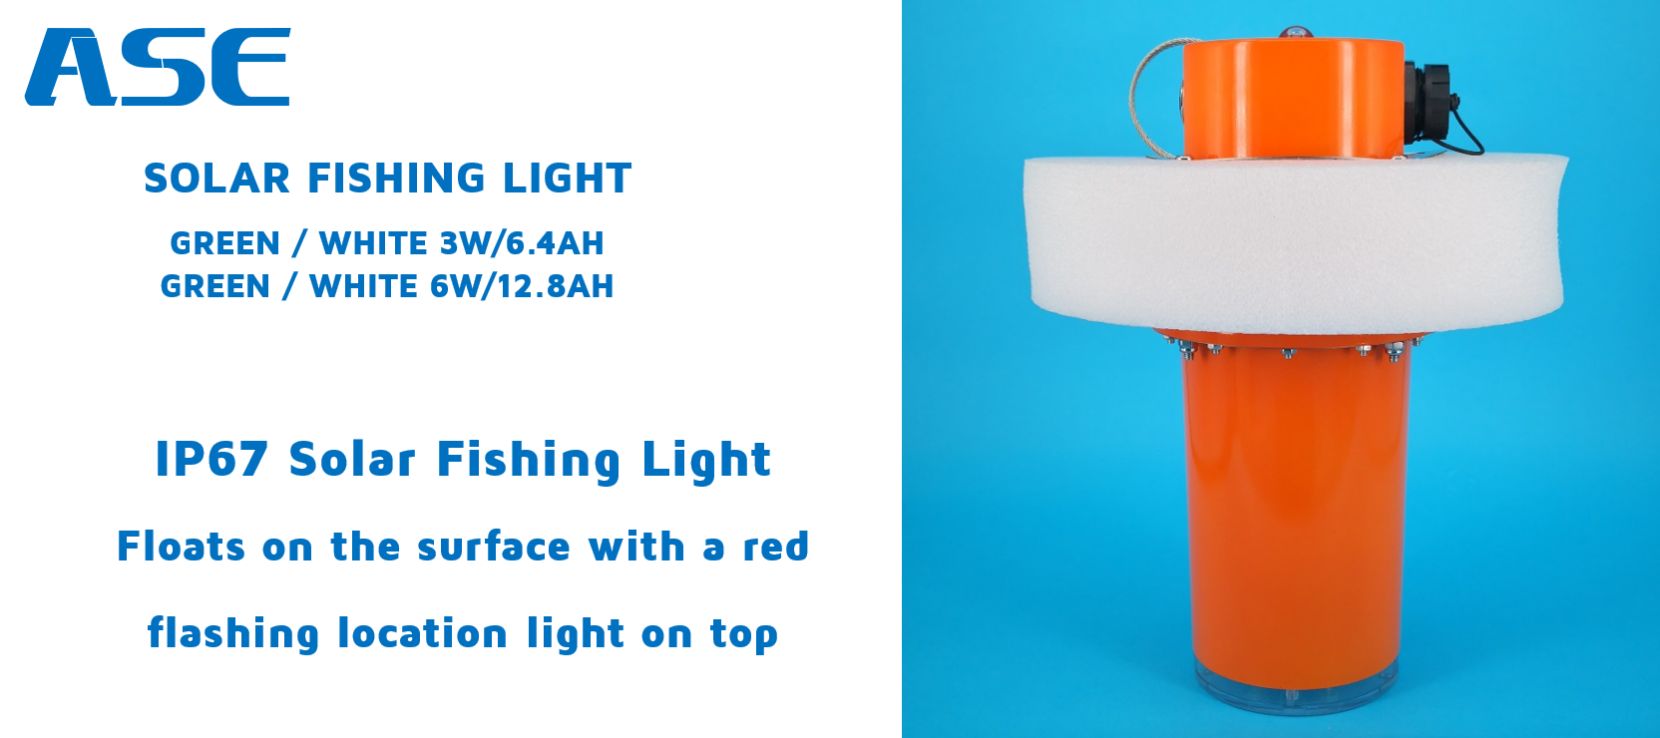 ase fishing light